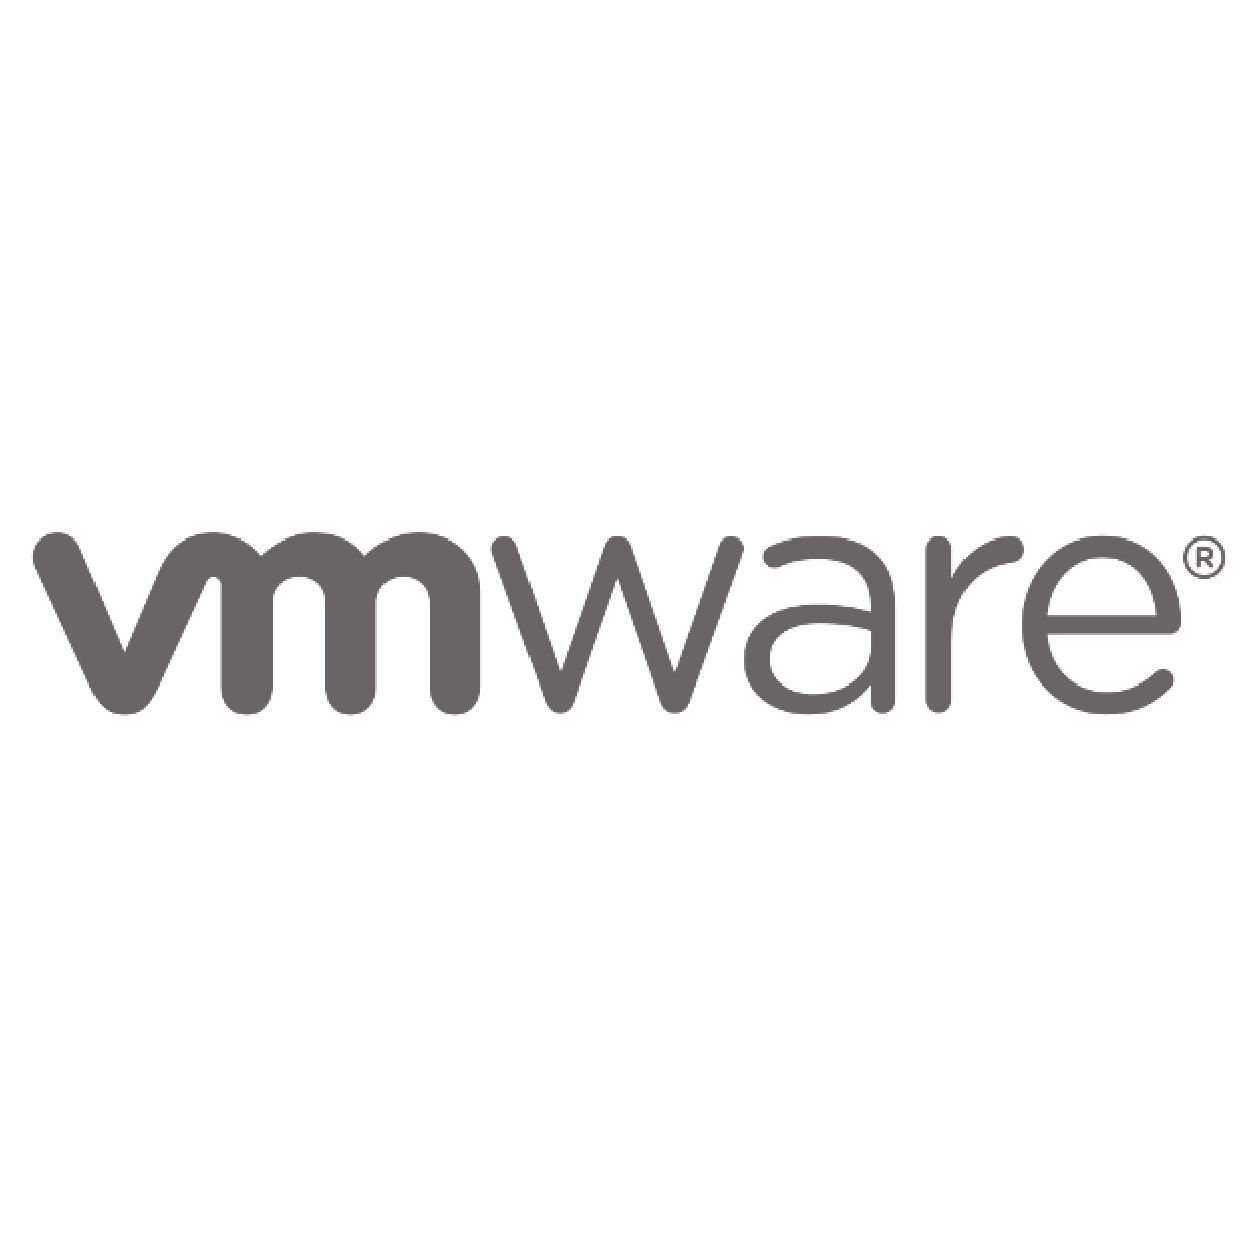 VMWare - logo